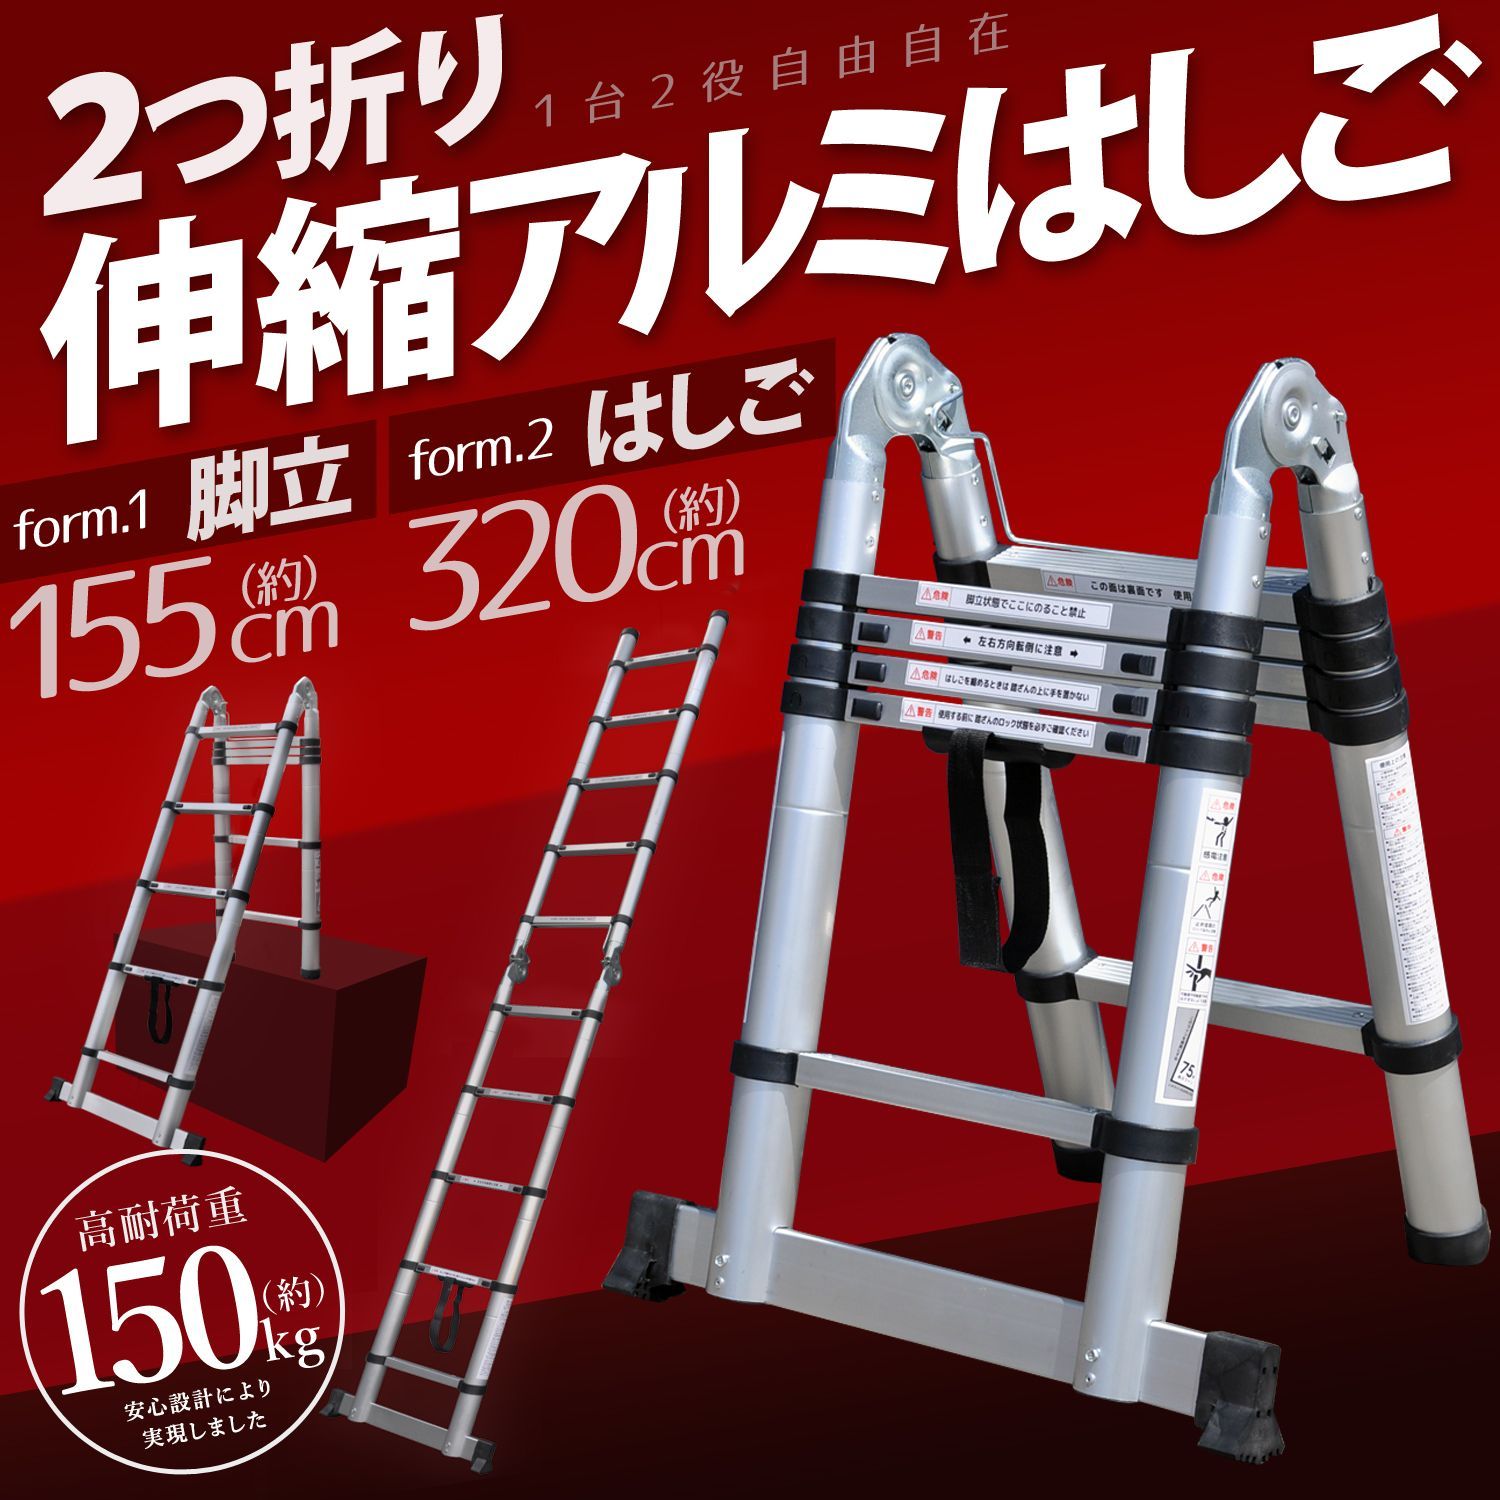 はしご 伸縮 3.2m 脚立 はしご兼用脚立 アルミ製 はしご 梯子